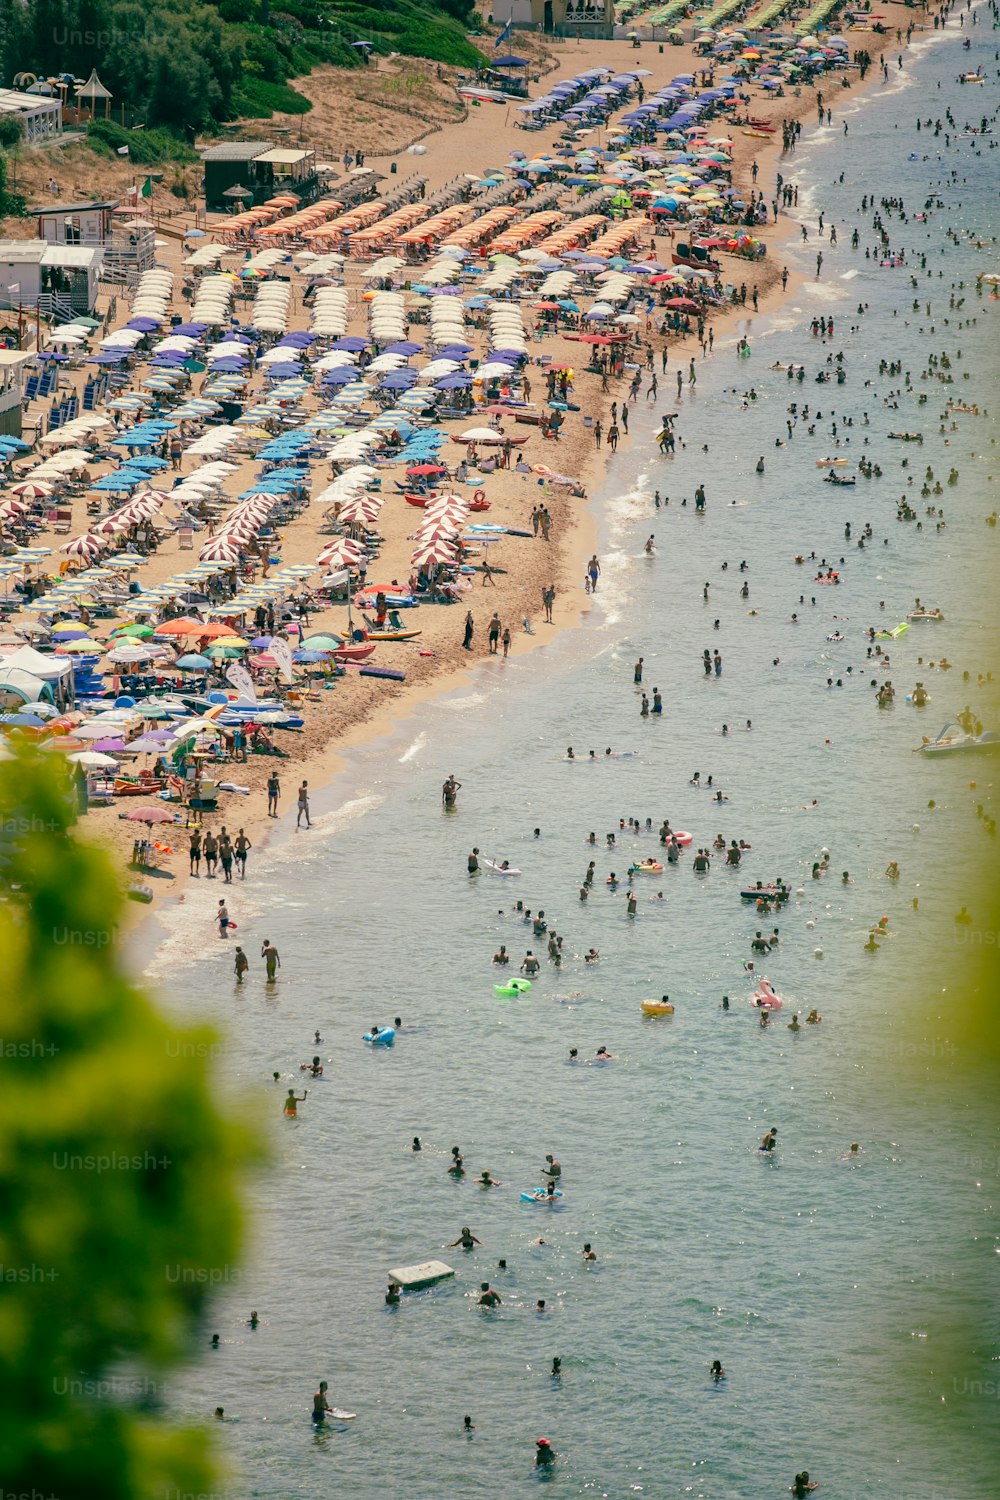 Una playa llena de gente y sombrillas